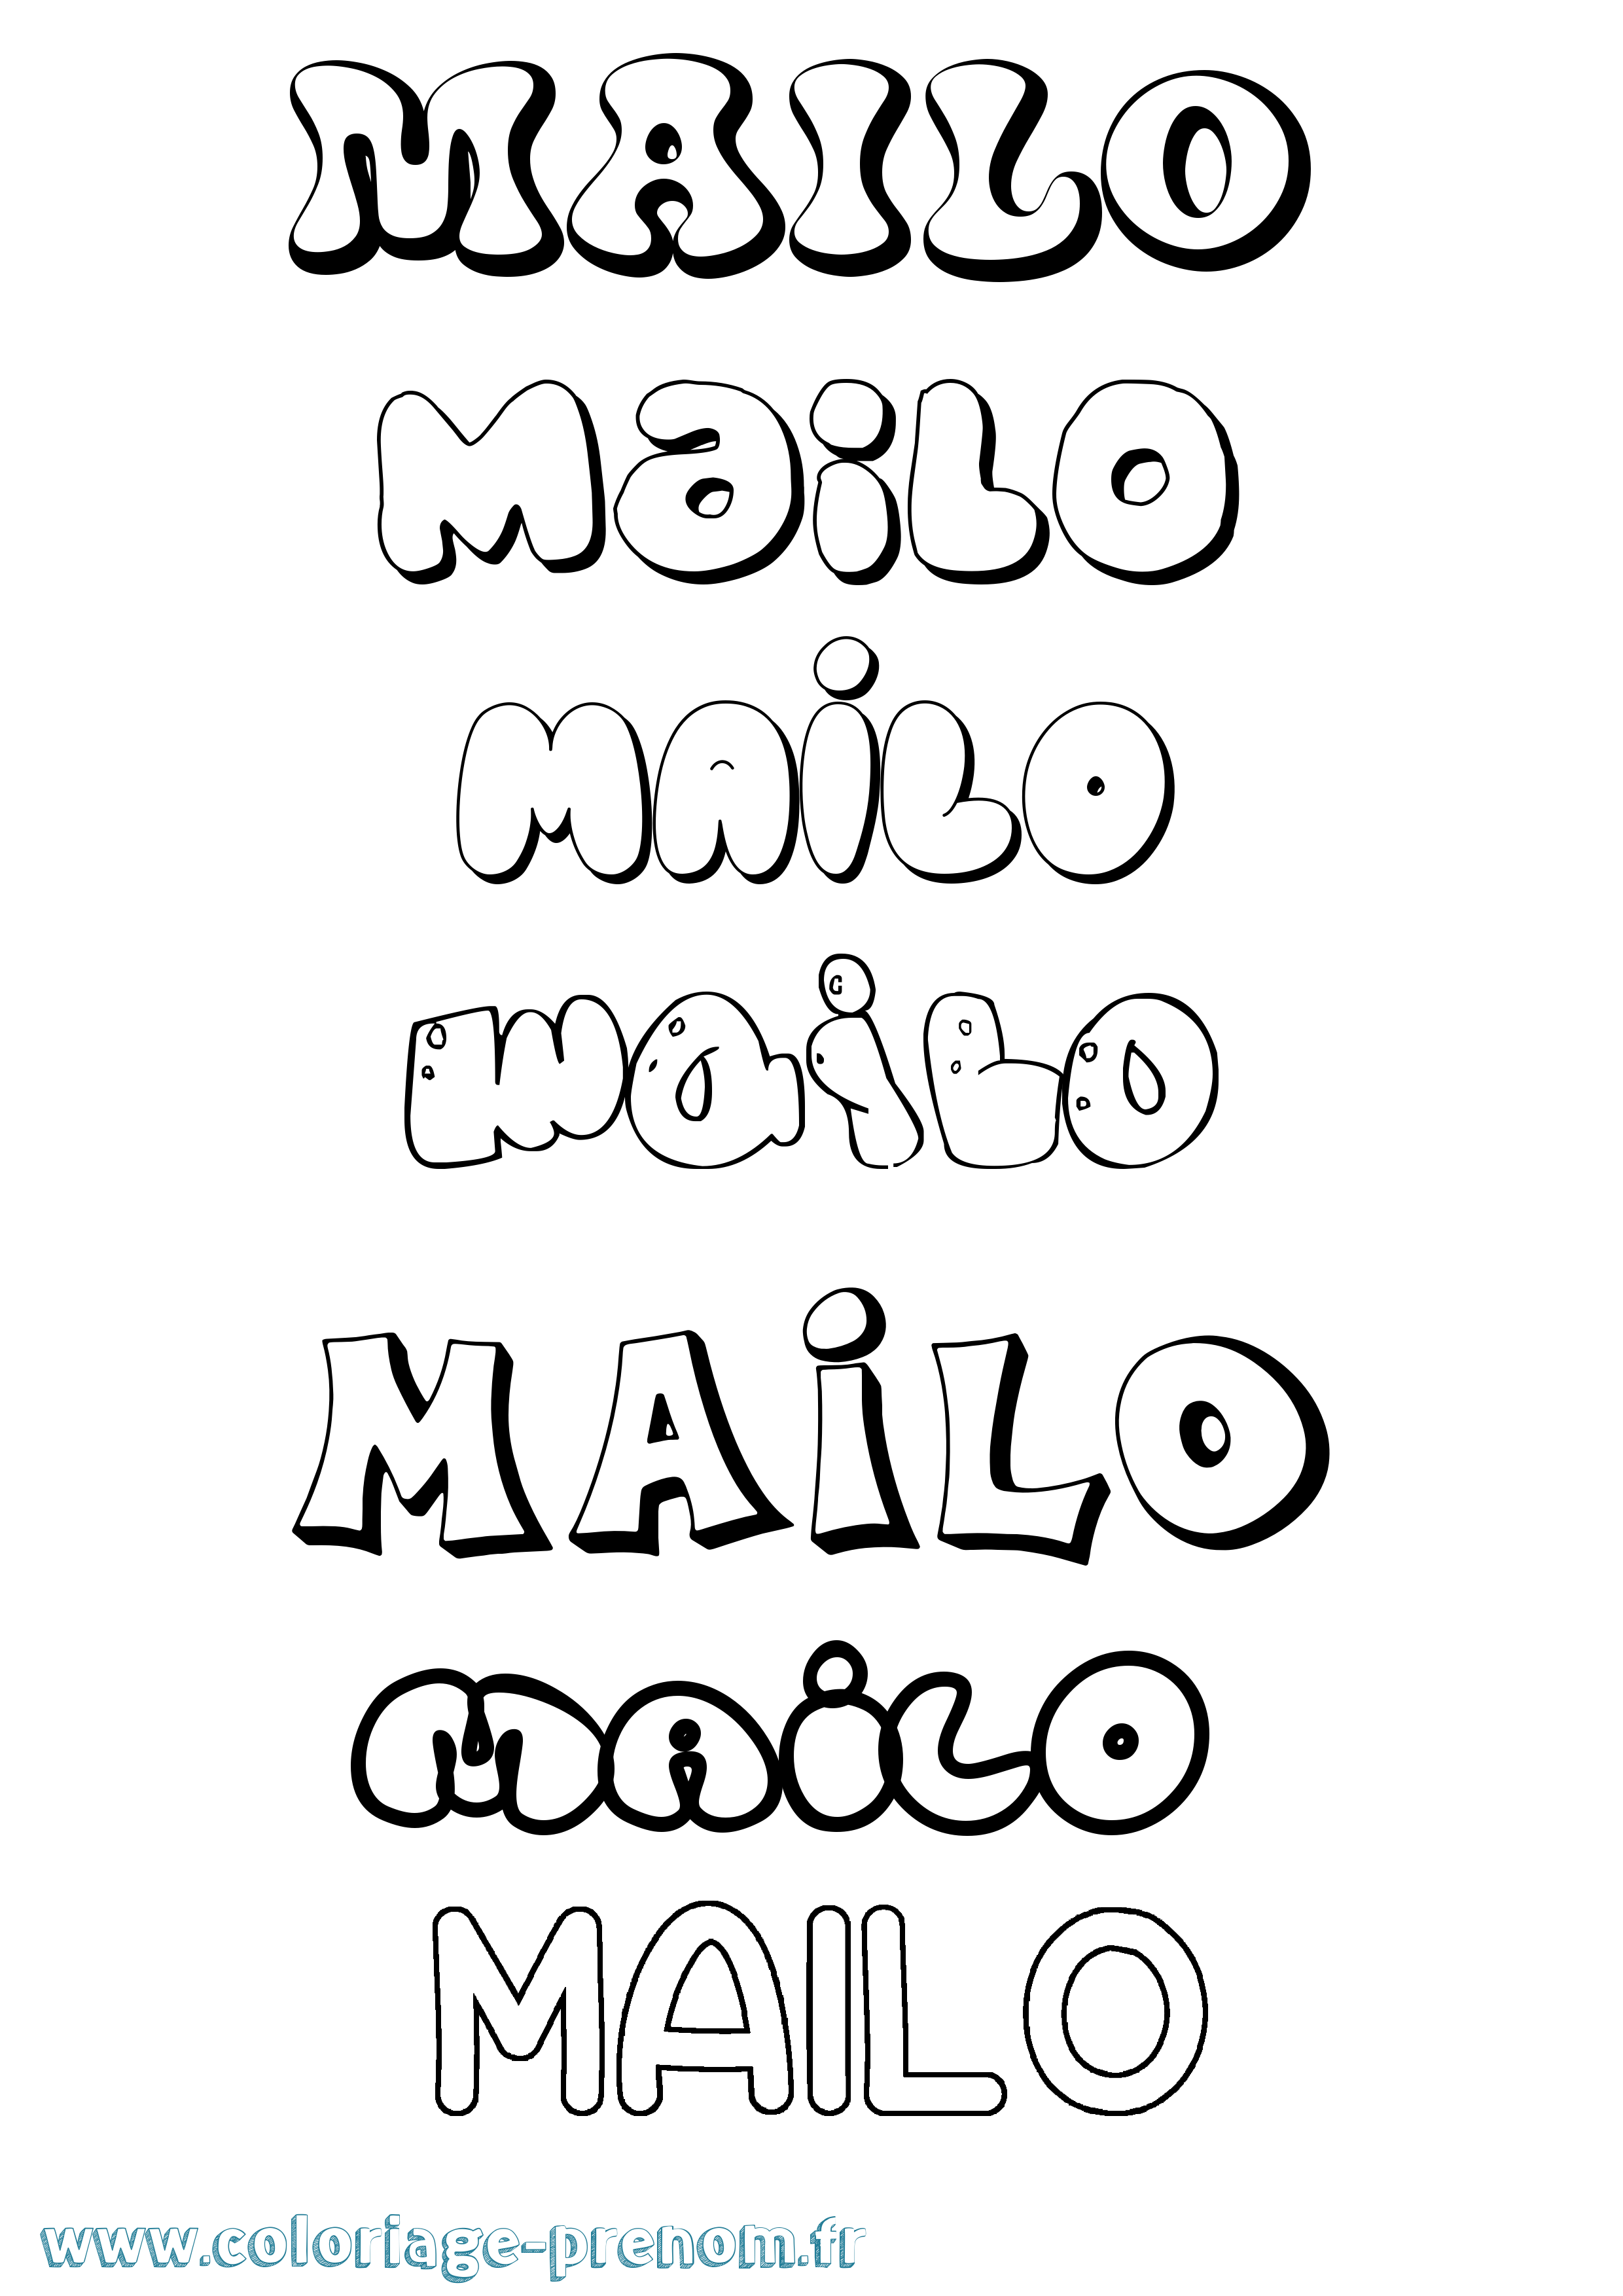 Coloriage prénom Mailo Bubble